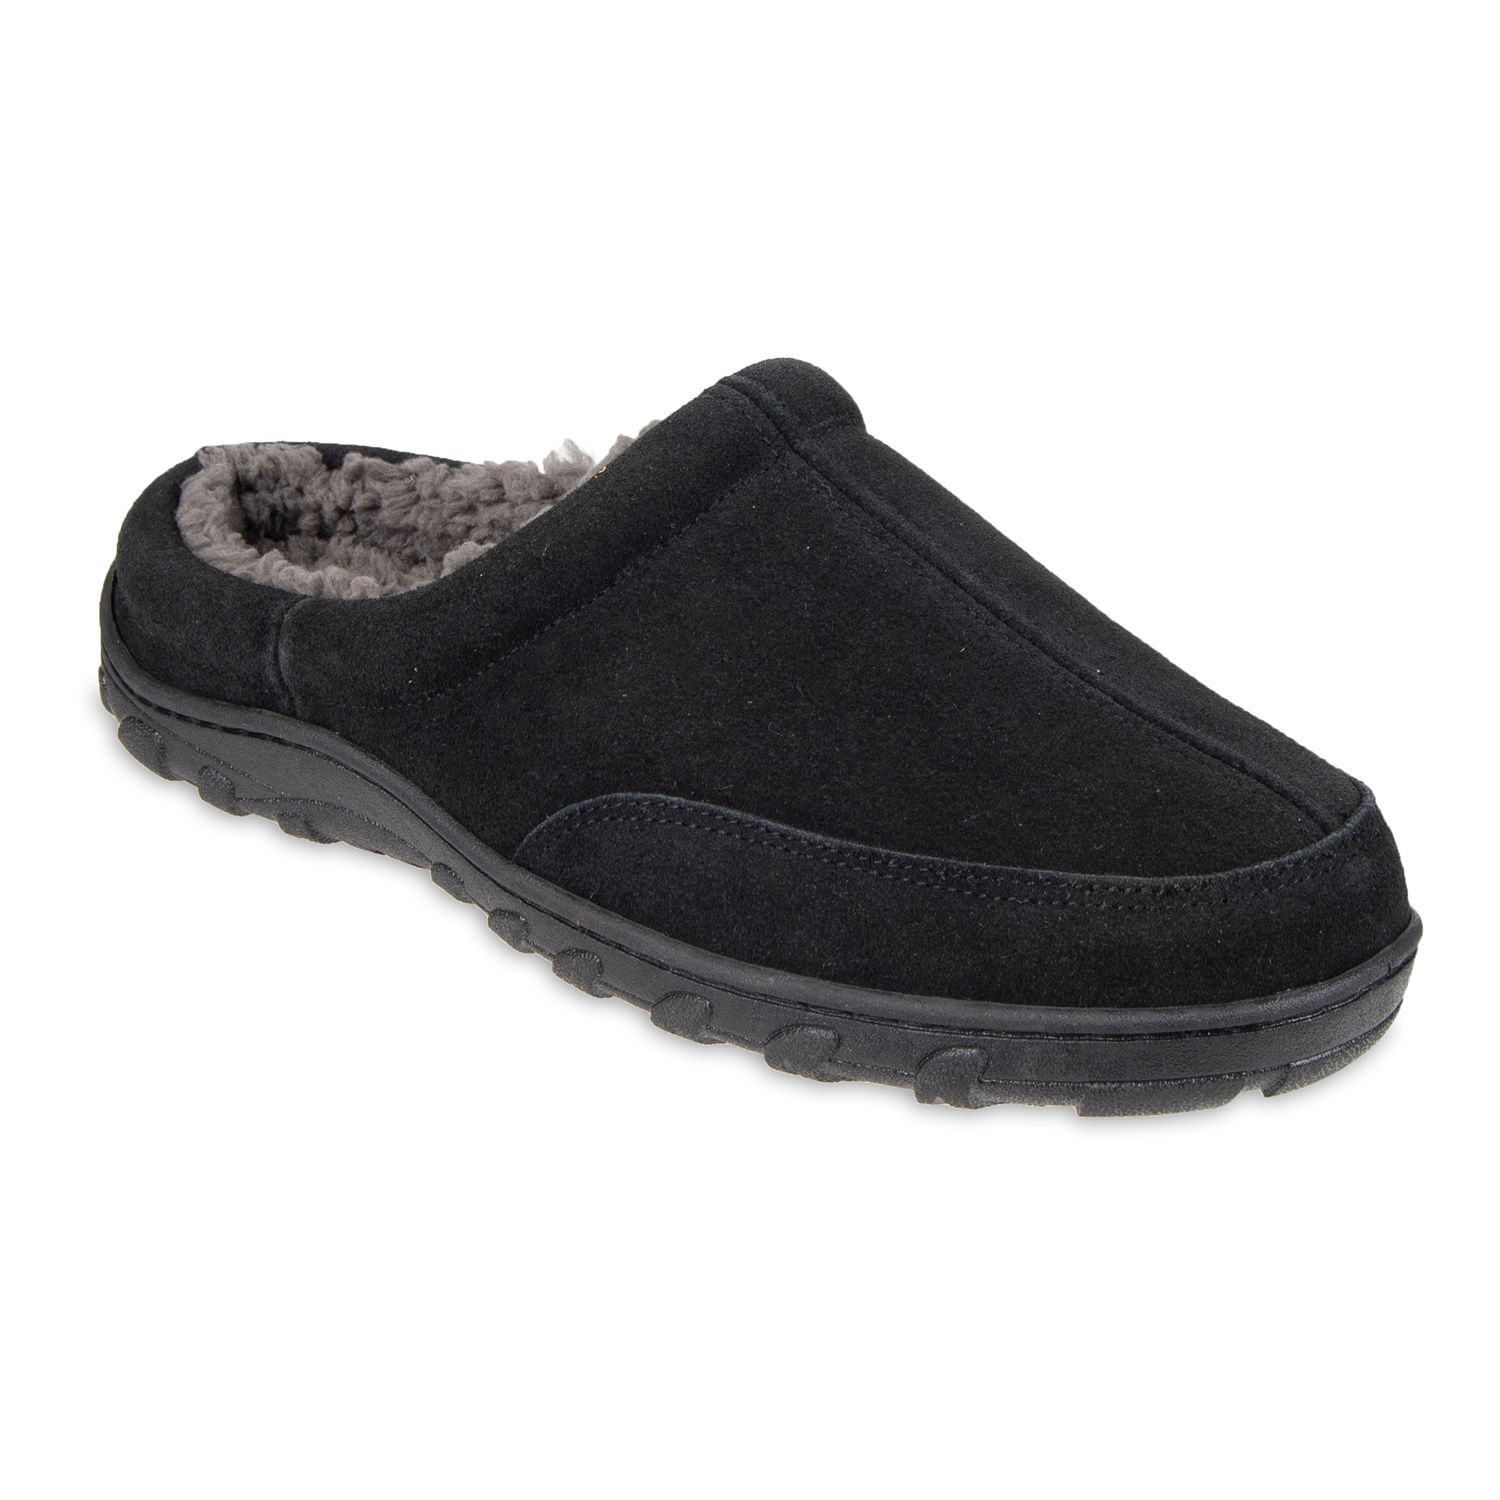 men's clog slippers